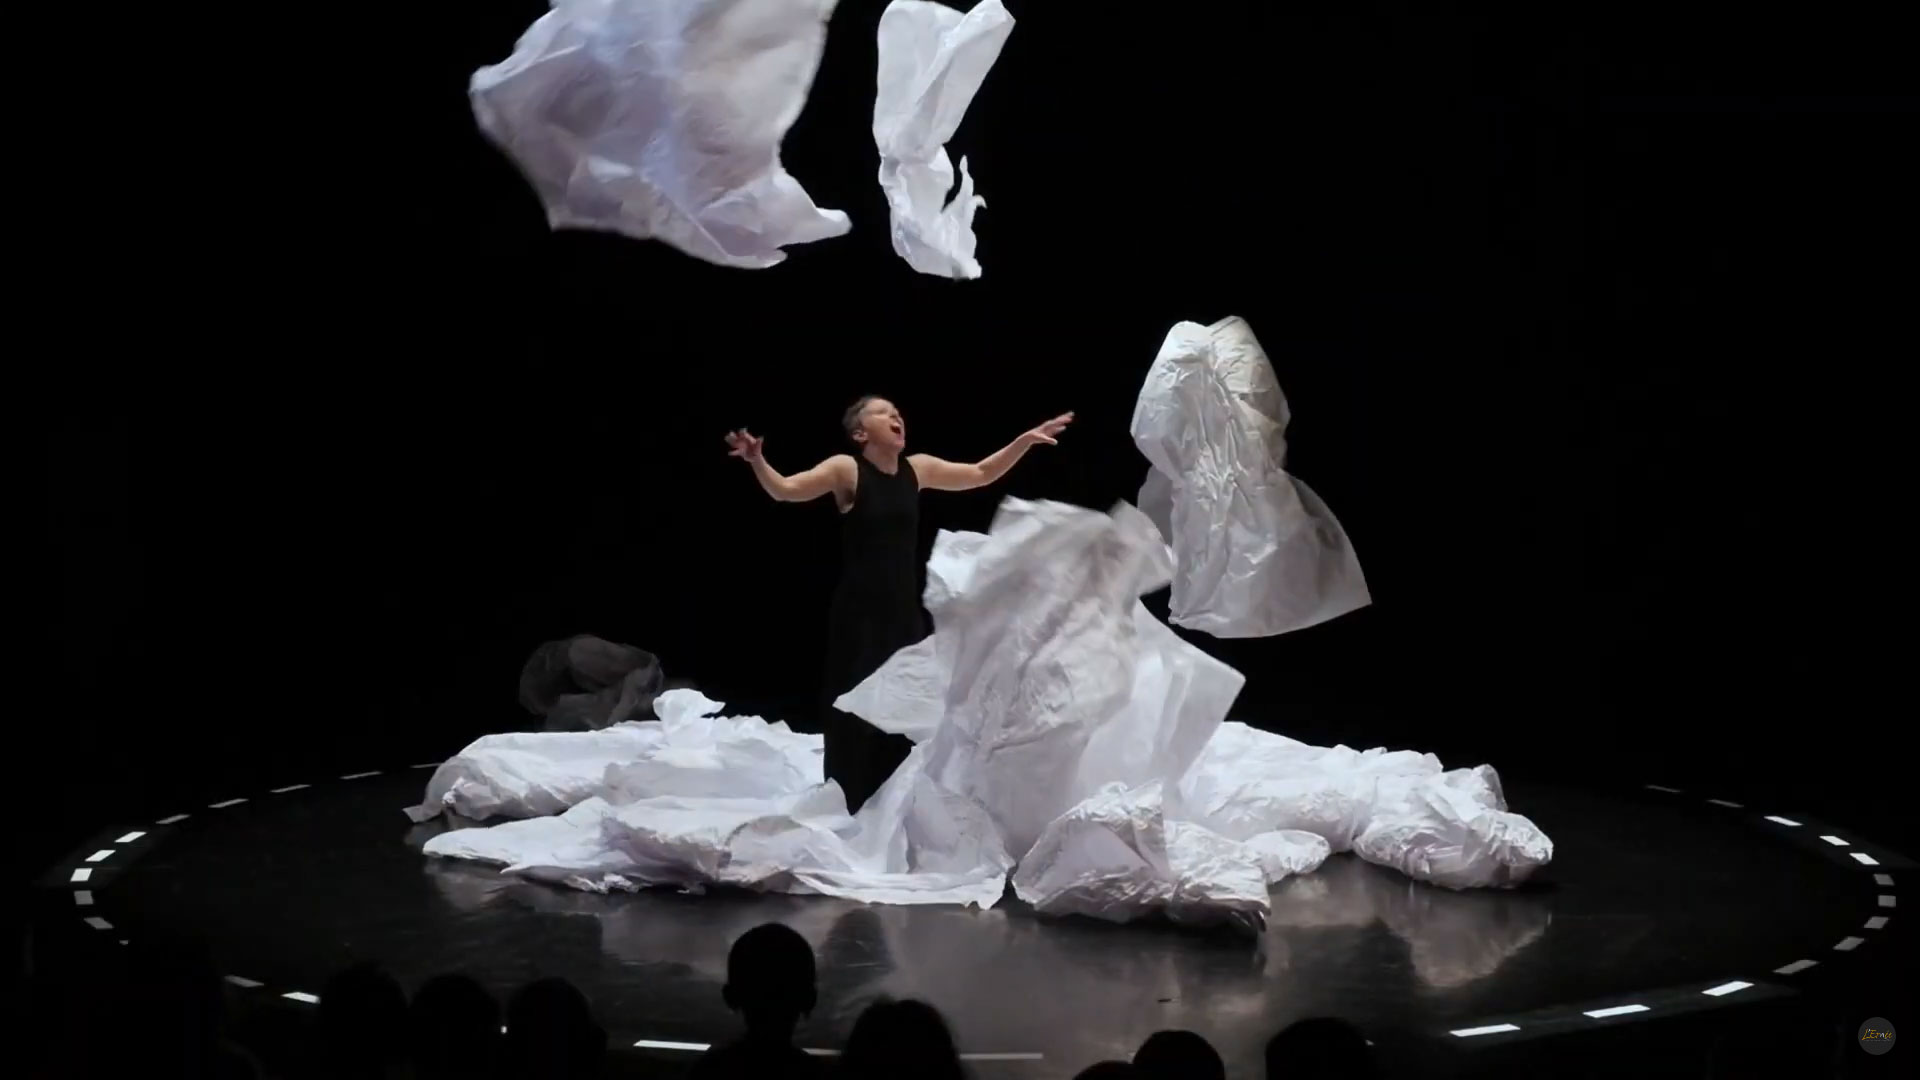 Papiers Dansés / Danse, arts plastiques - La Libentère